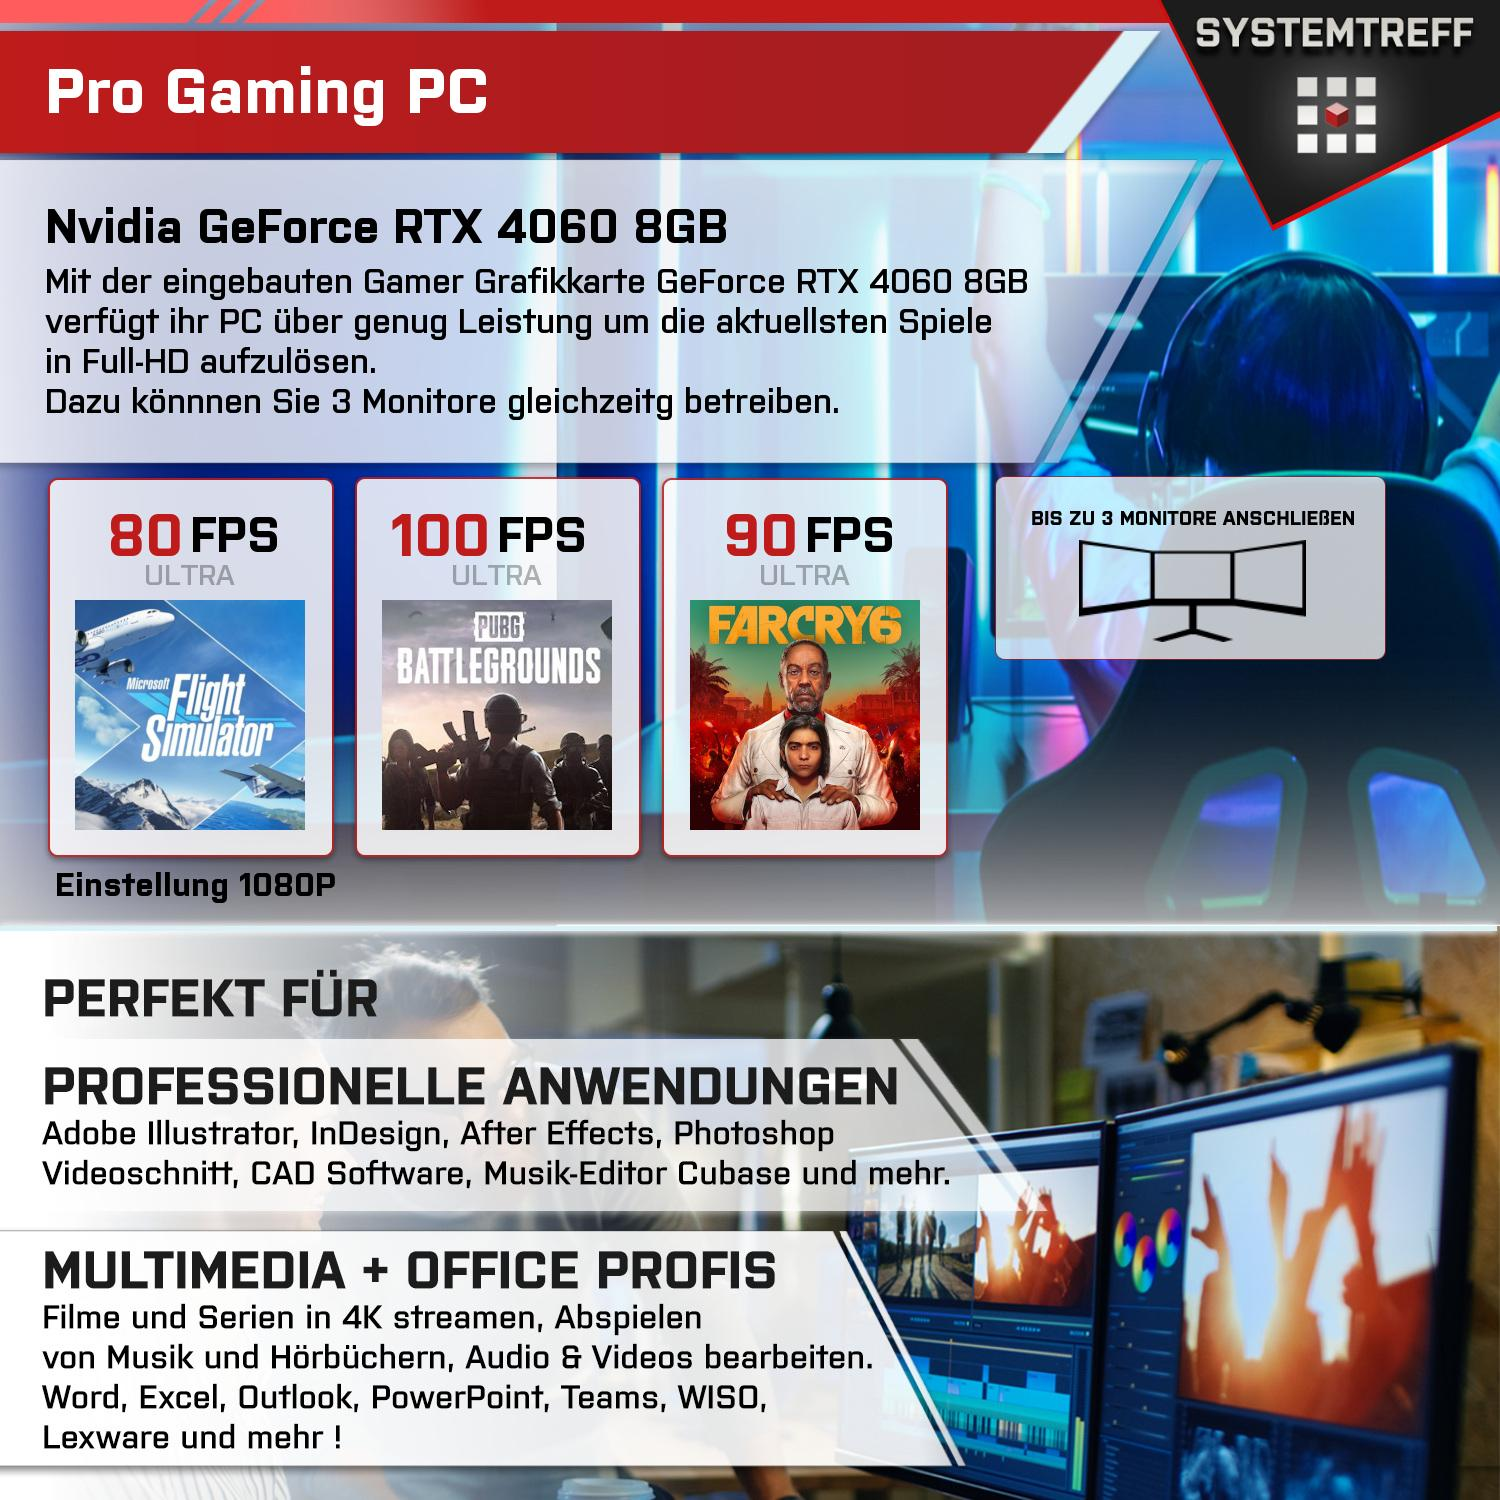 SYSTEMTREFF Gaming Komplett GeForce 16 4500, 4500 GDDR6 5 Prozessor, 8 AMD RAM, Nvidia Komplett GB GB RTX GB DLSS Ryzen mit 4060 PC 8GB 3, mit mSSD, 512